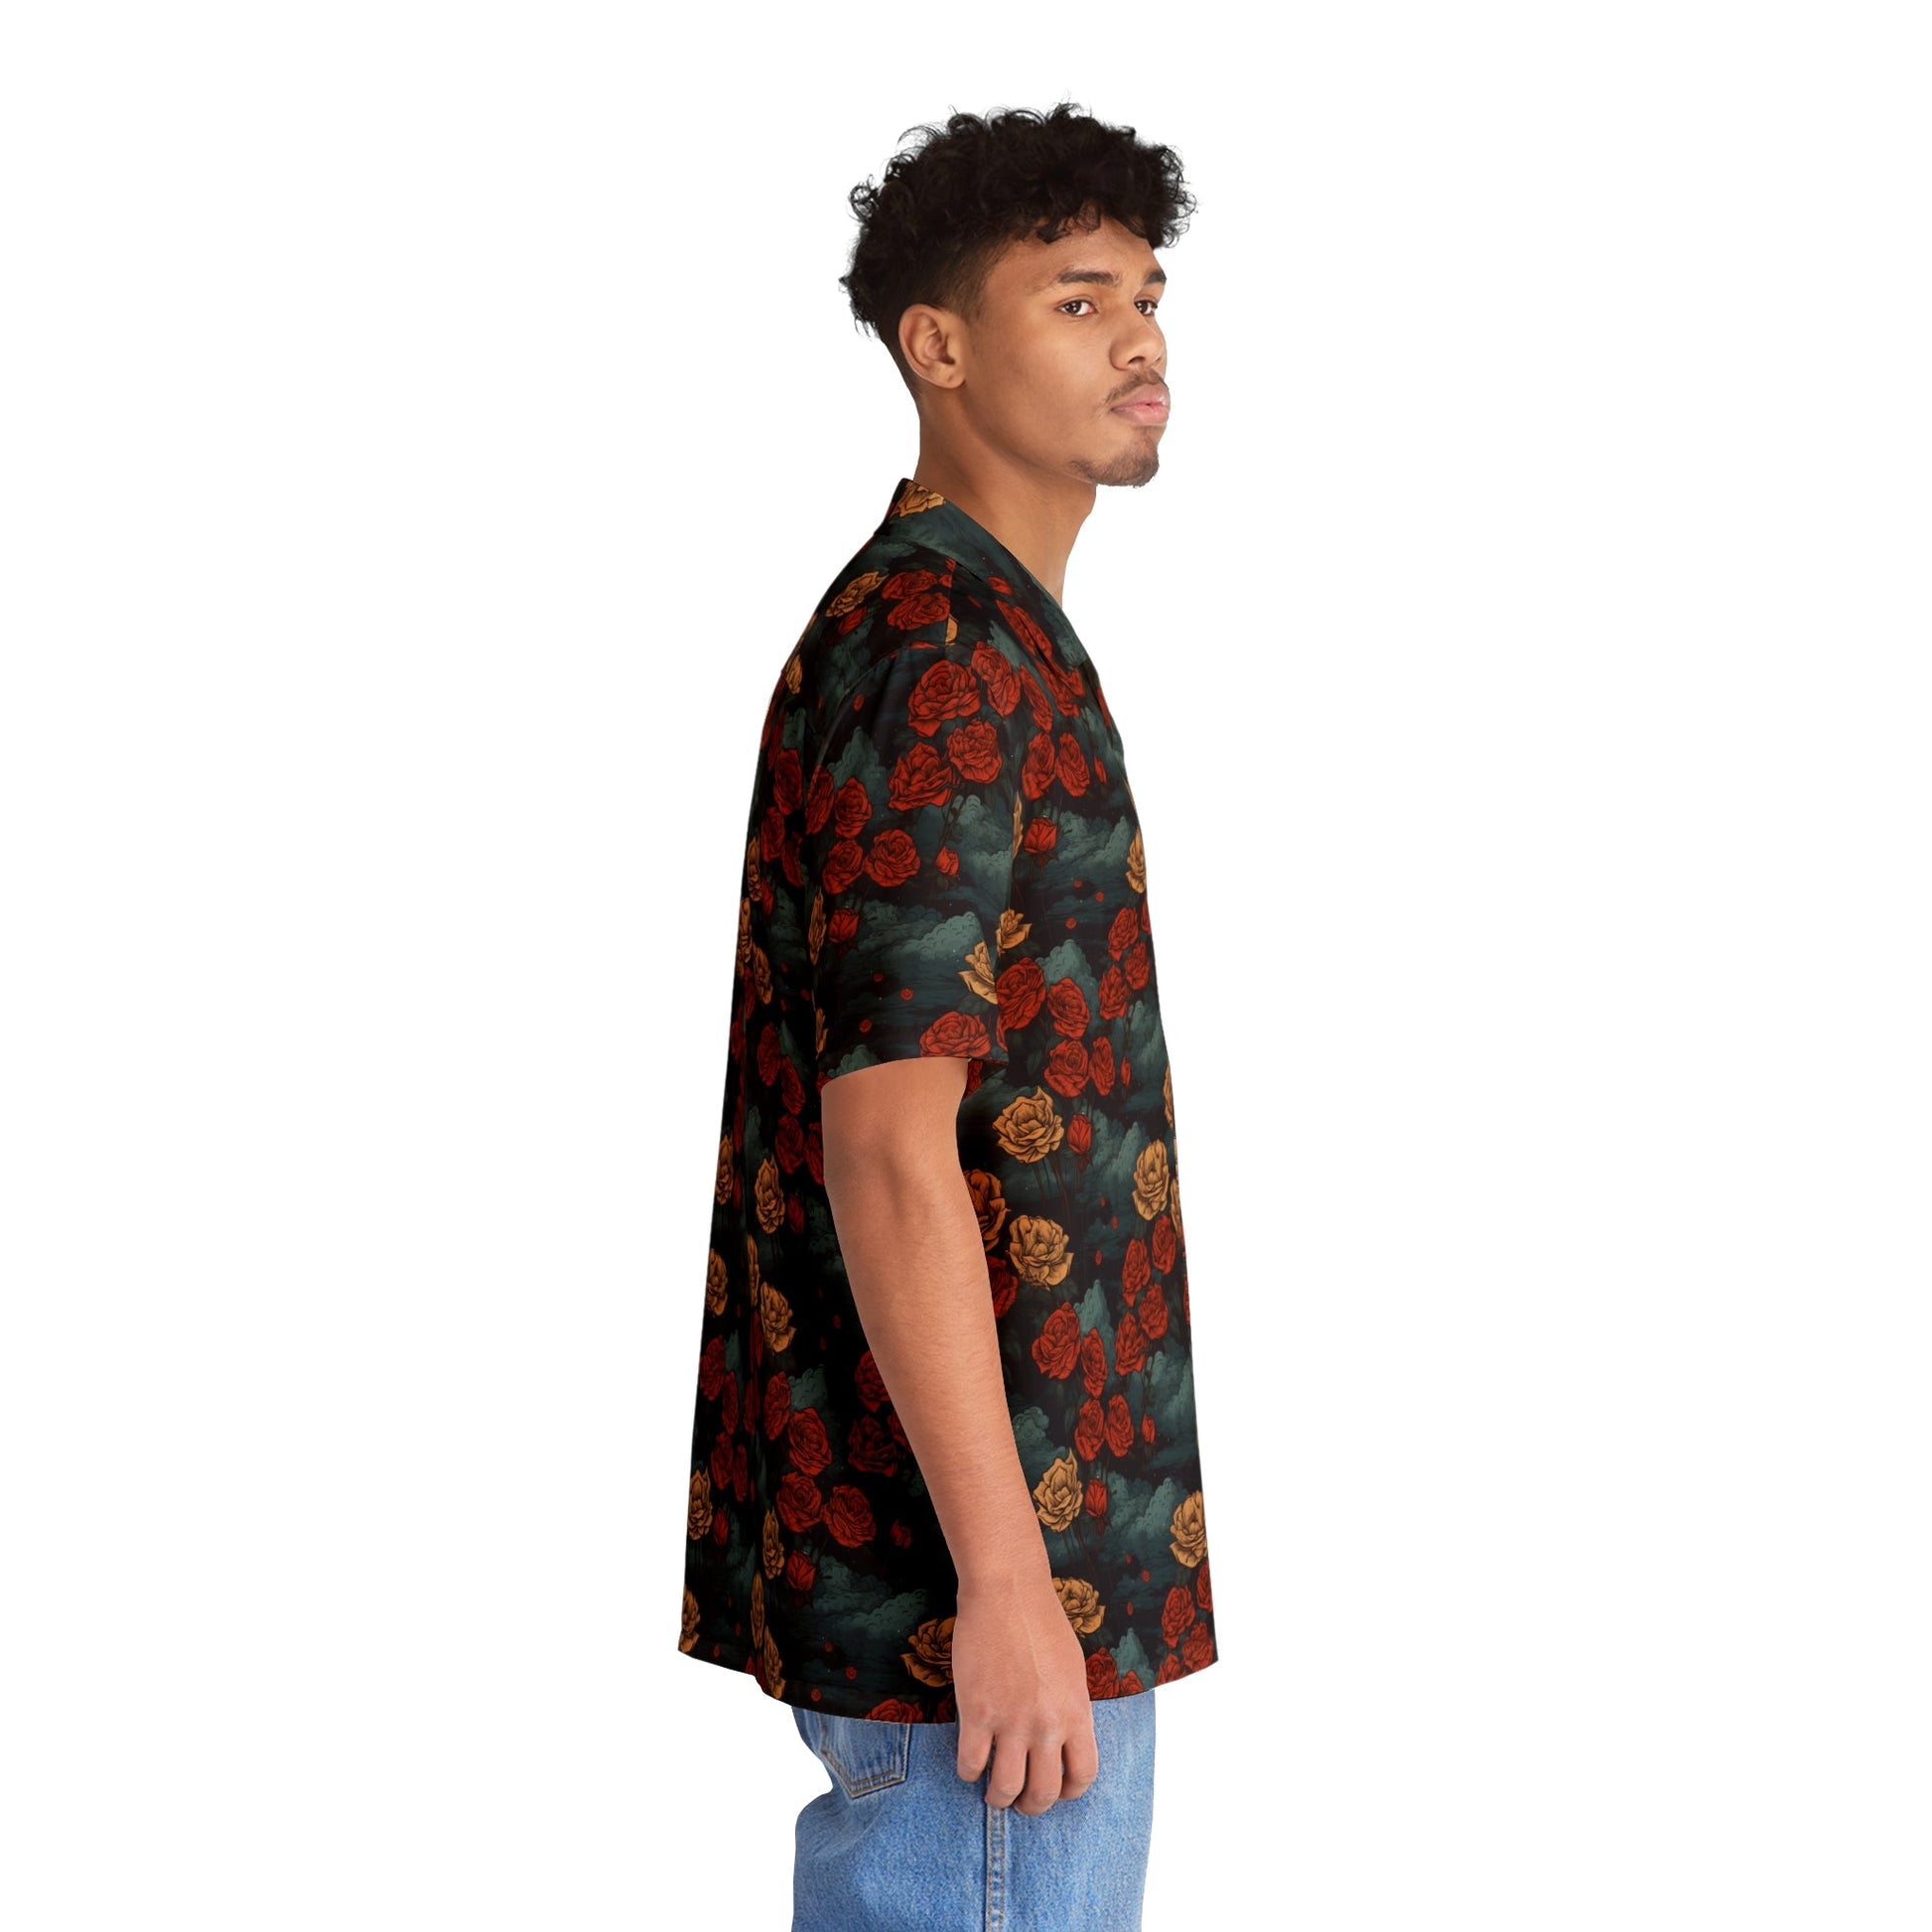 5 Rose Mix Men’s Hawaiian Shirt by Neduz Designs